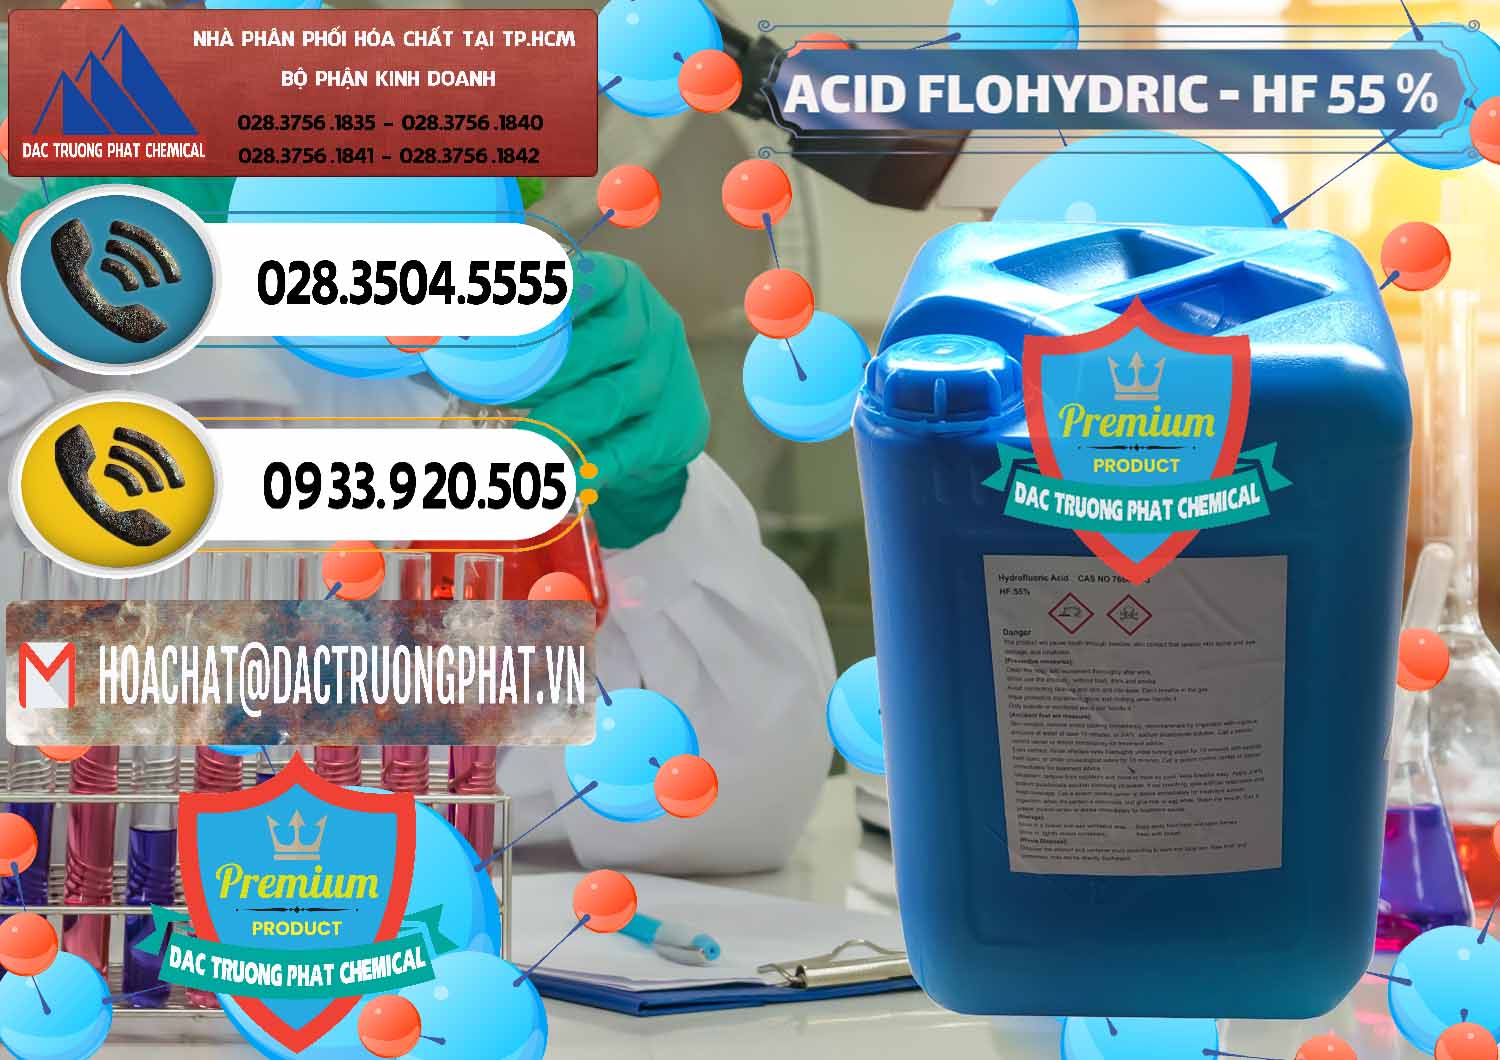 Đơn vị chuyên kinh doanh & bán Axit HF - Acid HF 55% Can Xanh Trung Quốc China - 0080 - Cty chuyên nhập khẩu & cung cấp hóa chất tại TP.HCM - hoachatdetnhuom.vn